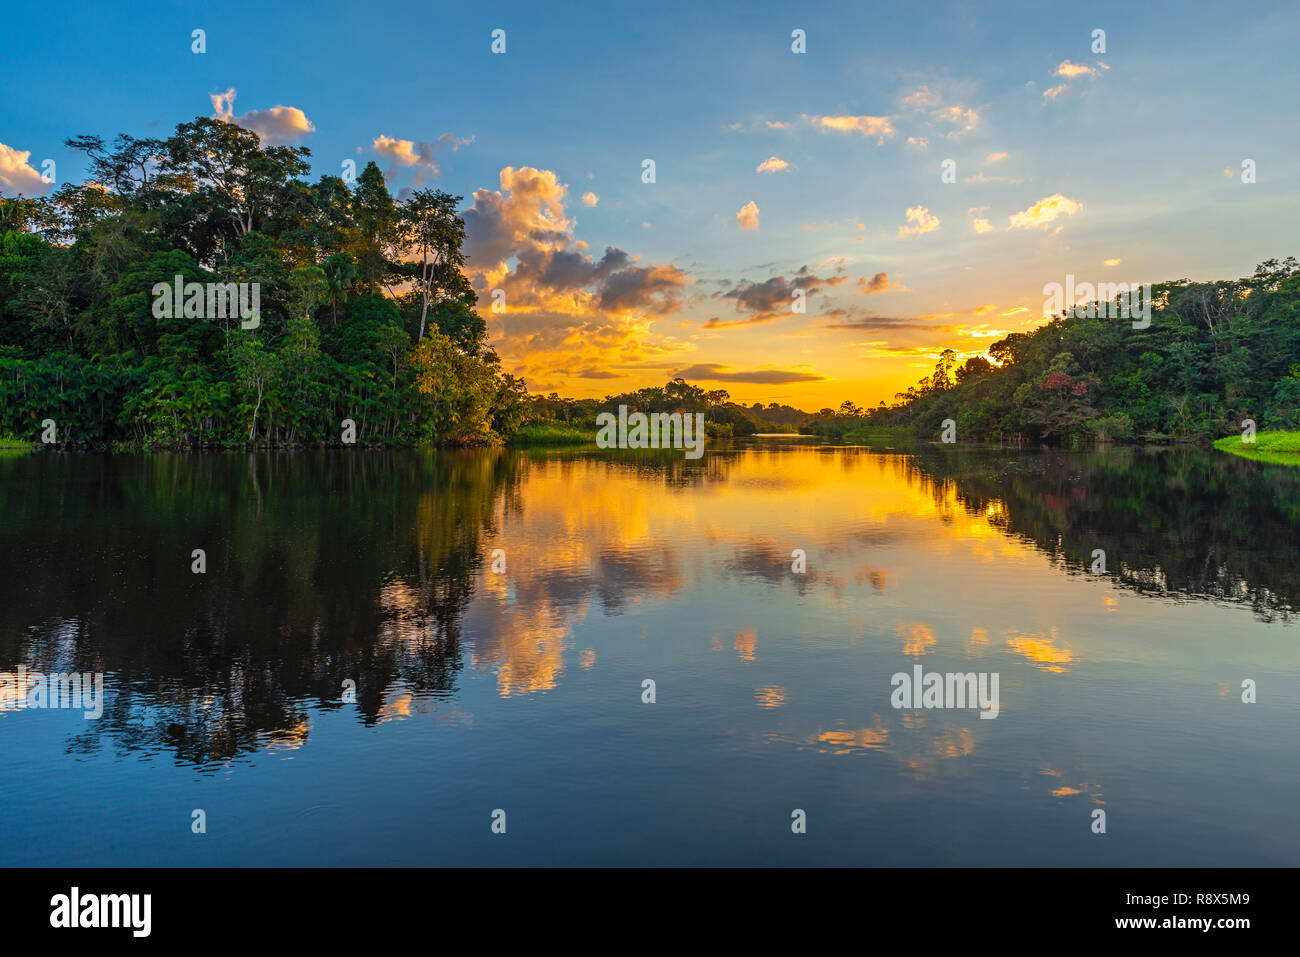 Reflexion eines Sonnenuntergangs im Regenwald des Amazonas Becken. Die Länder Brasilien, Bolivien, Kolumbien, Ecuador, Peru, Venezuela, Guyana und Surinam. Stockfoto